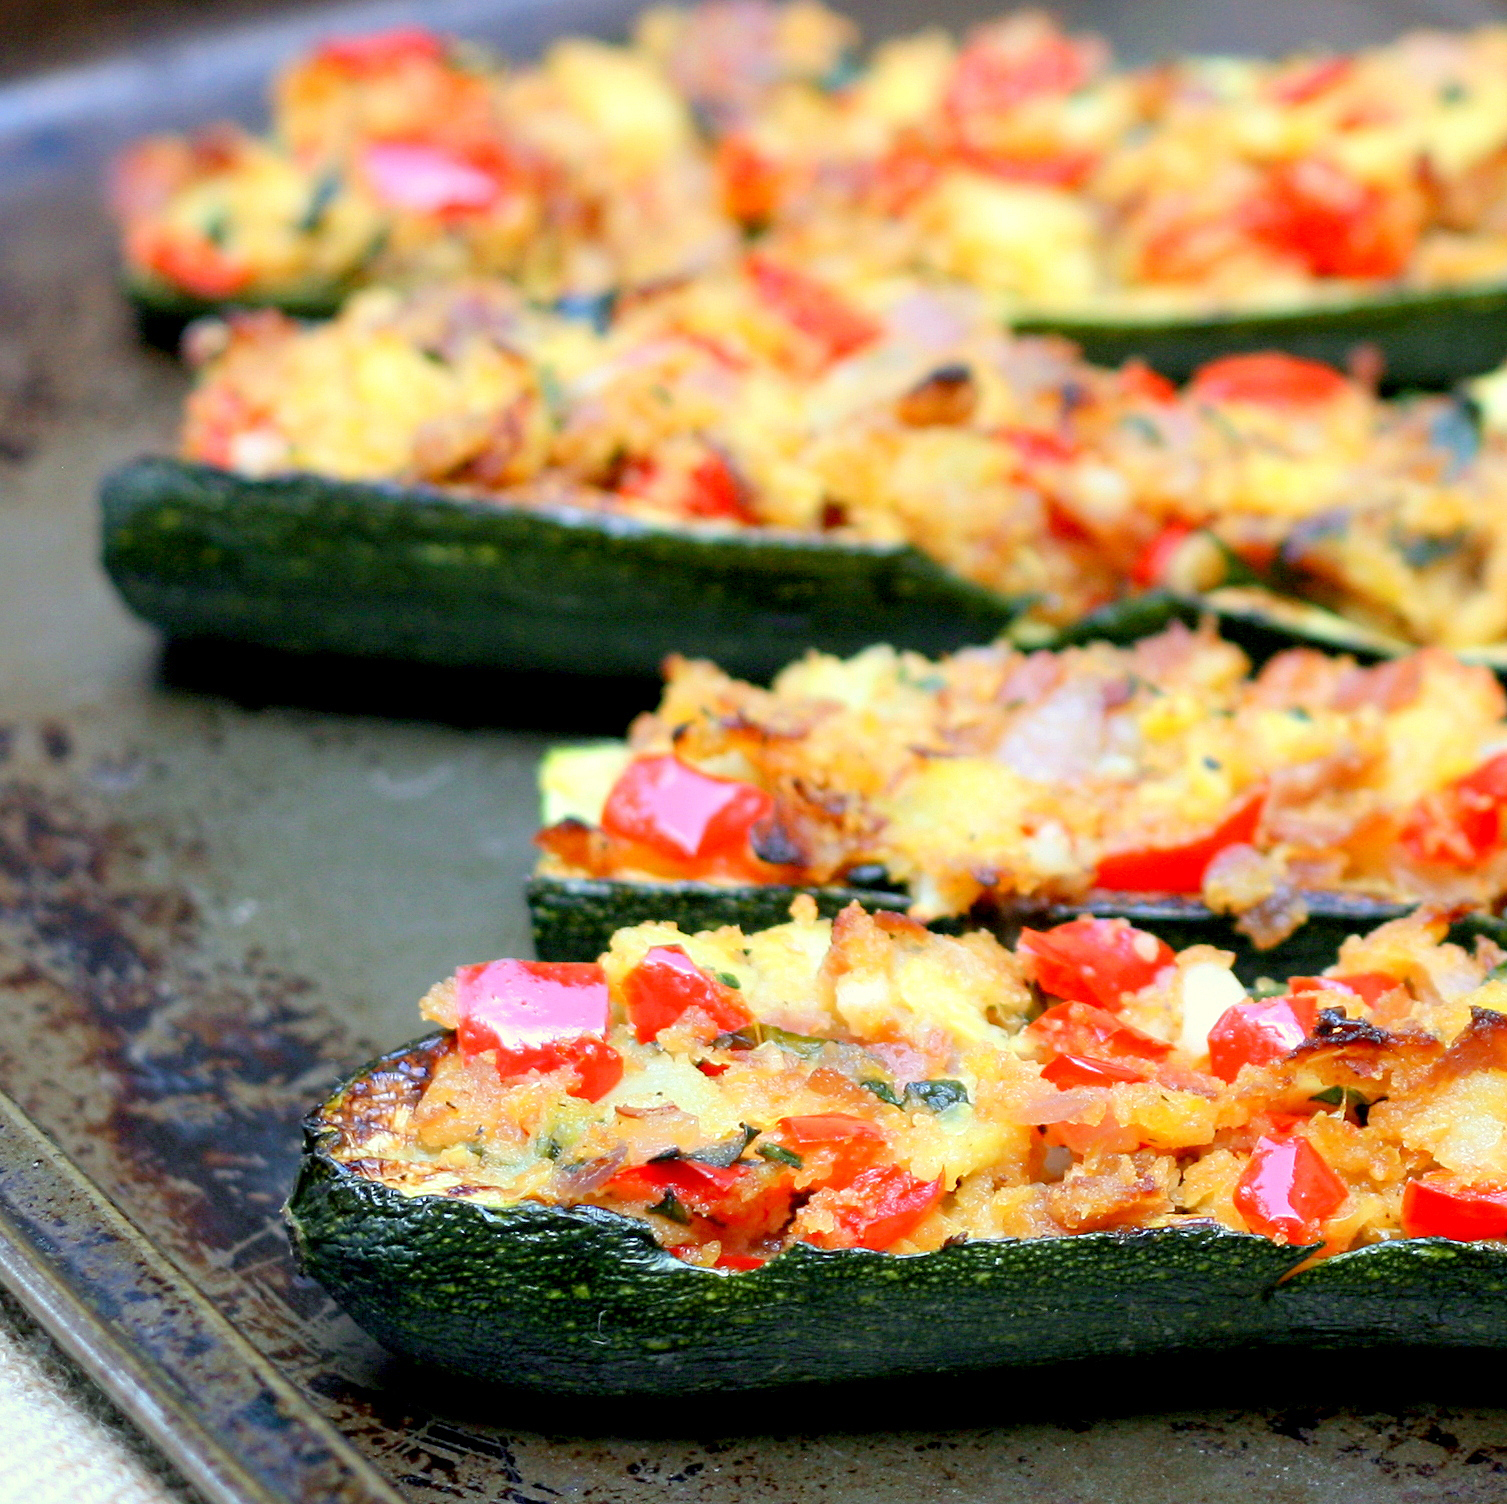 mix it up: stuffed zucchini boats